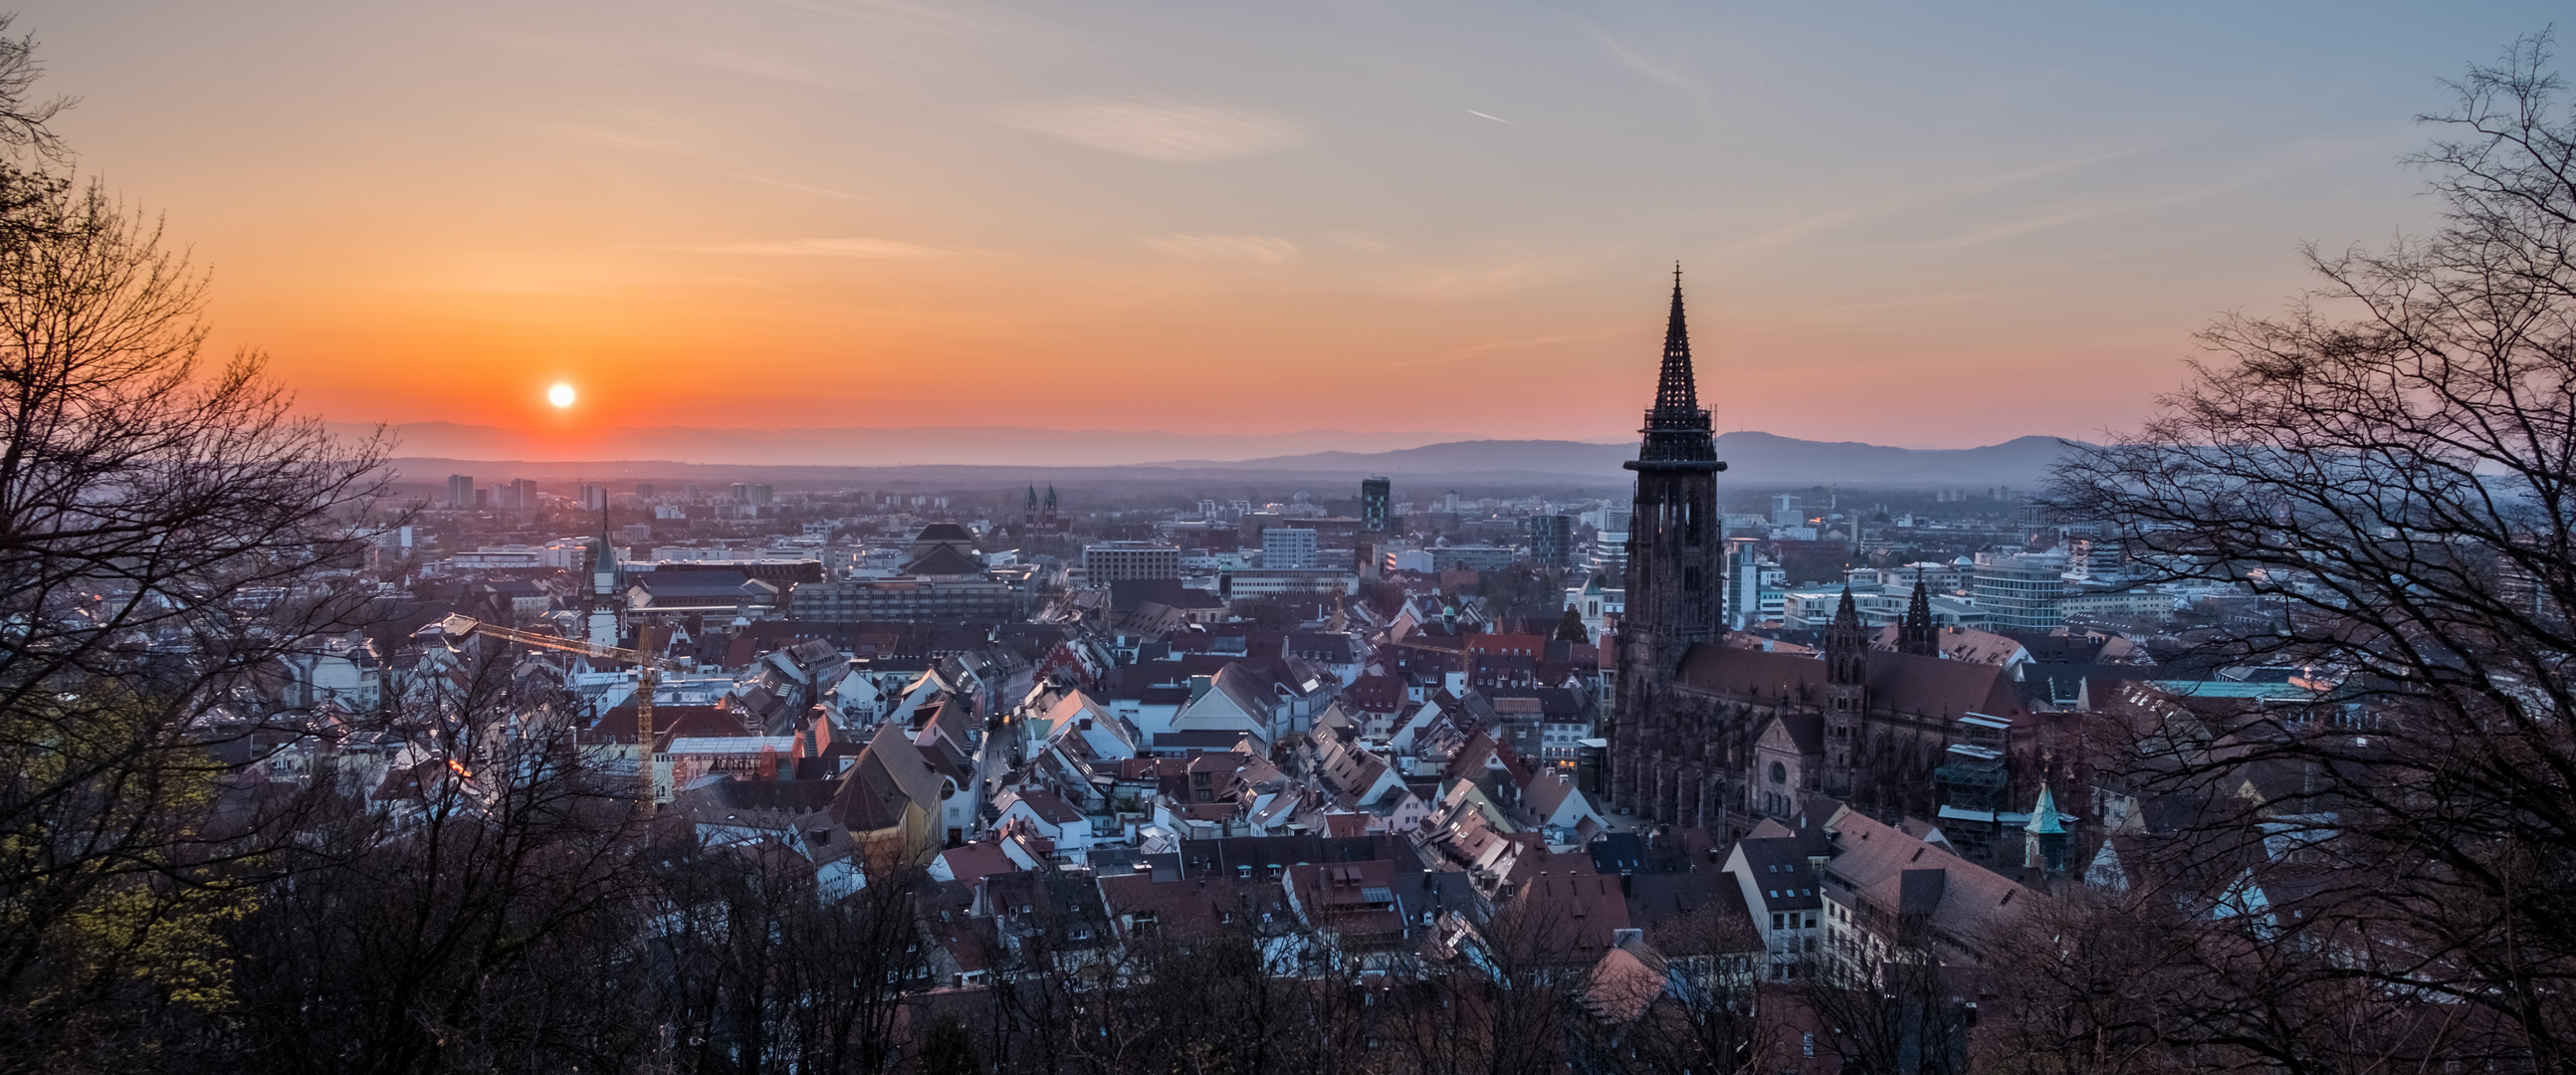 Sonnenuntergang über Freiburg